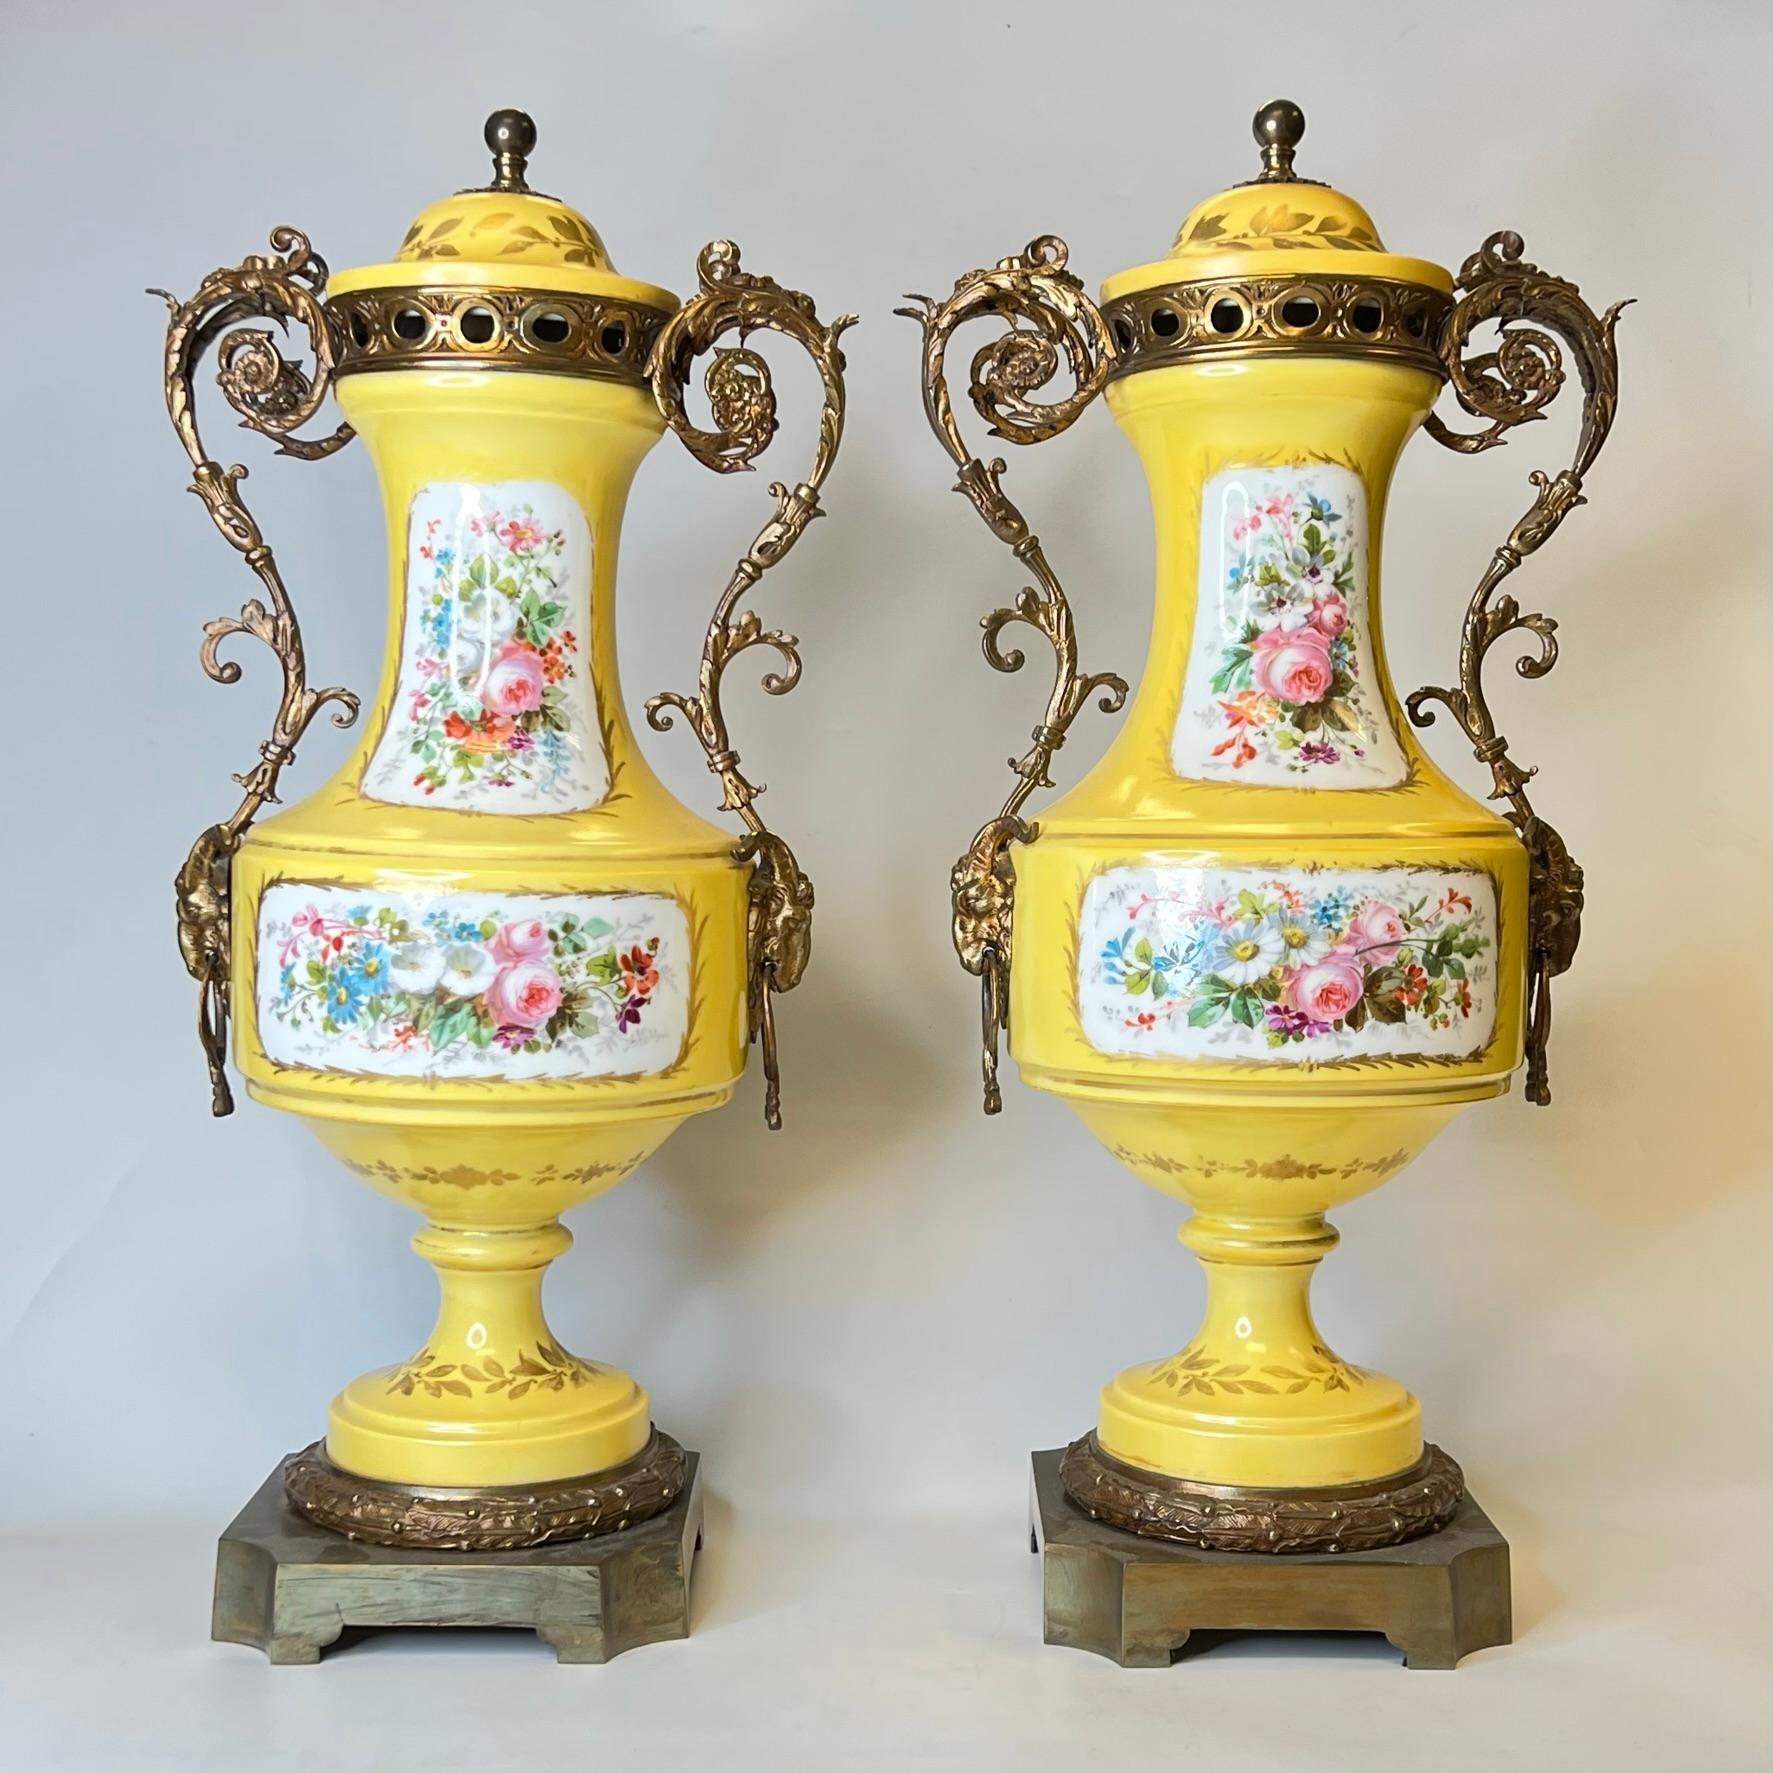 Paire d'urnes en porcelaine de Sèvres du XIXe siècle, montées sur bronze, de style Louis XV/XVI, avec des cartouches finement peints représentant des amoureux en train de se faire la cour et des bouquets de fleurs.
